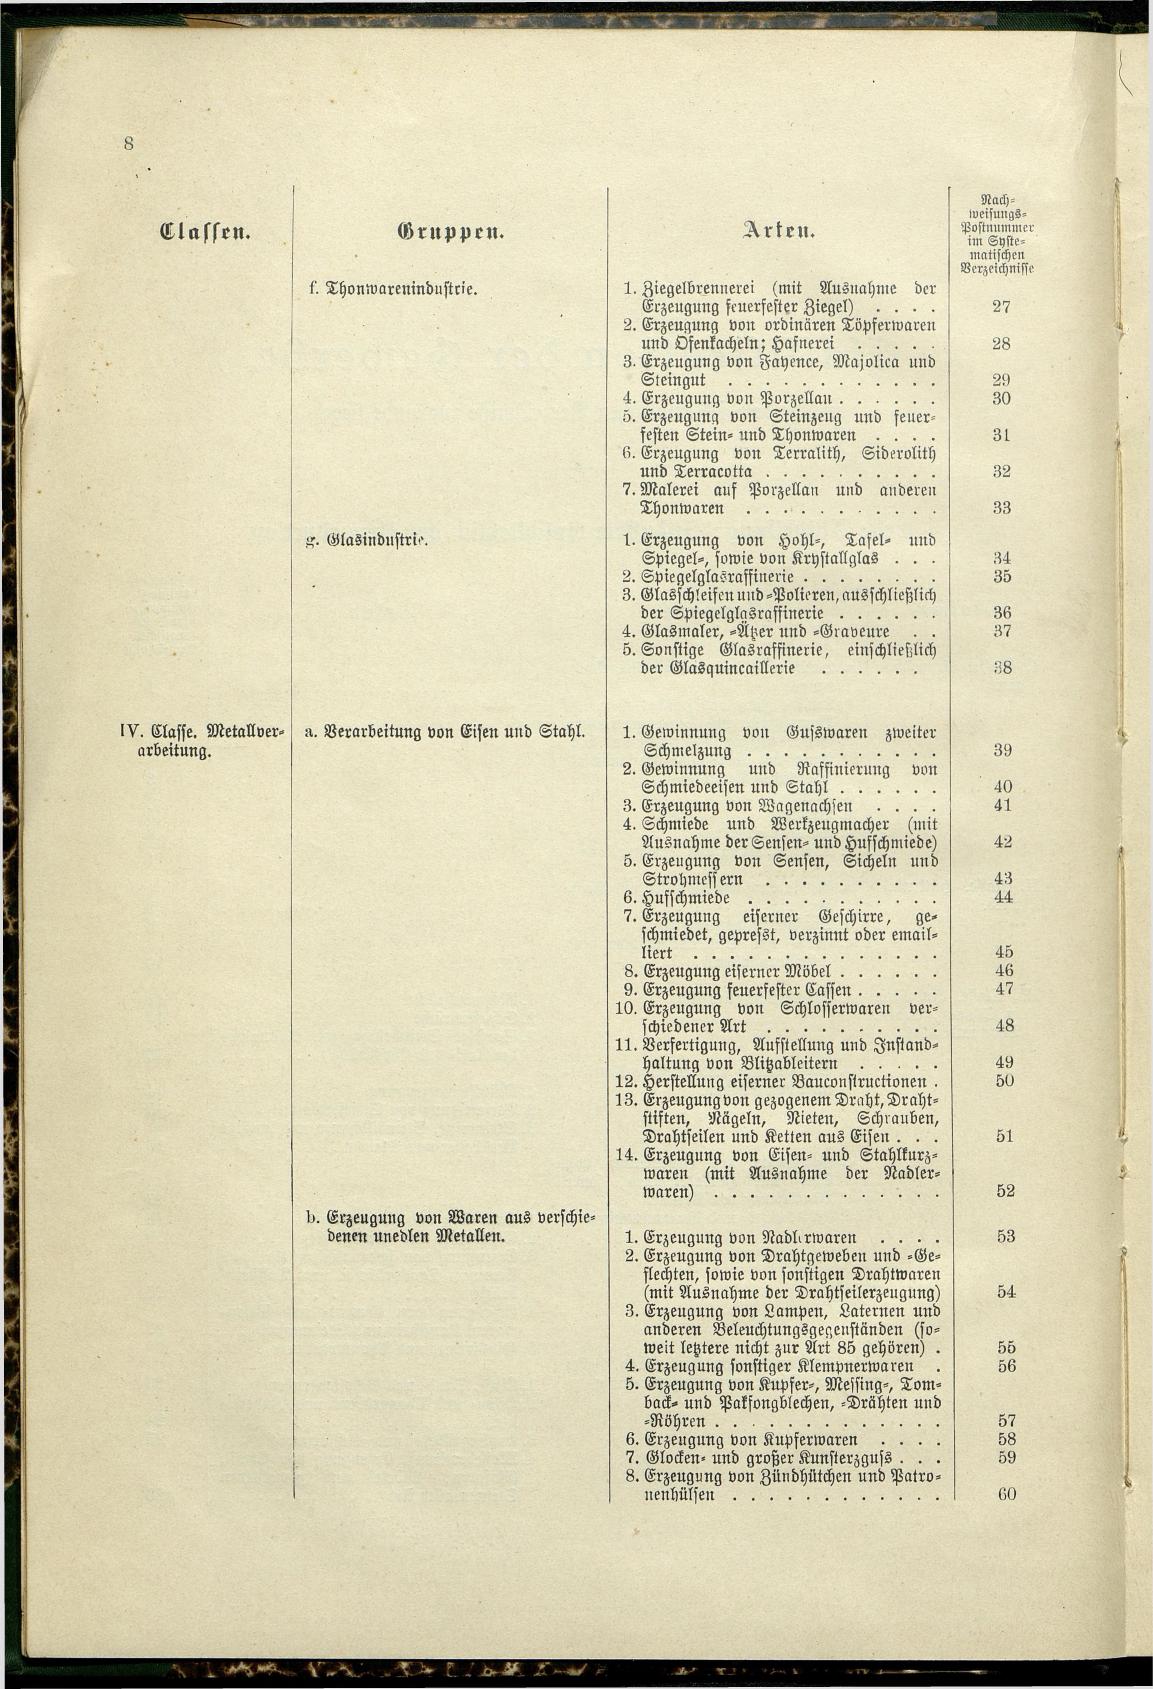 Verzeichnis der Gewerbe der im Reichsrathe vertretenen Königreiche und Länder 1900 - Page 12